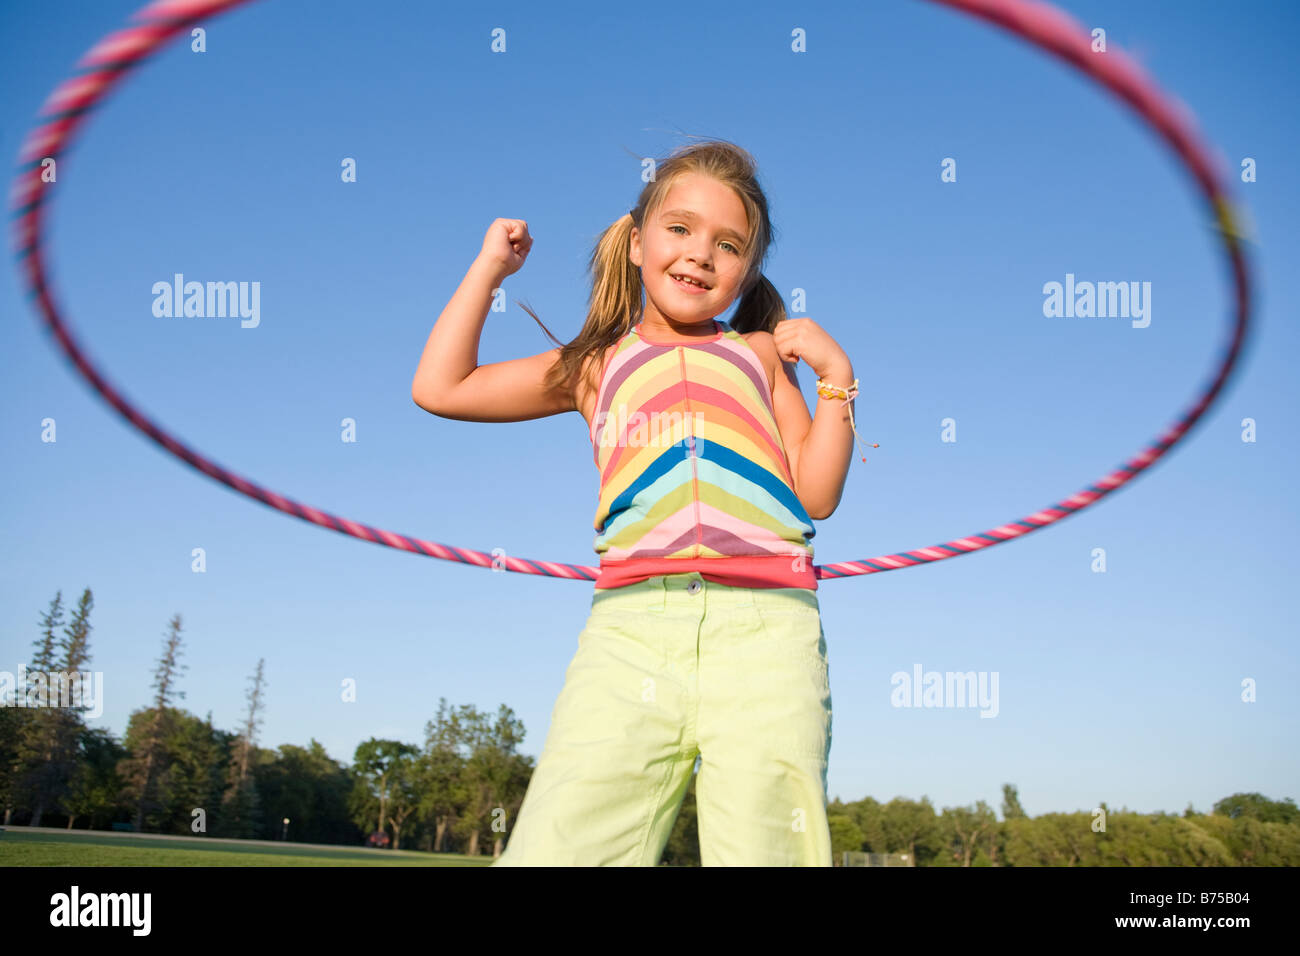 Niños jugando con aros de hula fotografías e imágenes de alta resolución -  Página 2 - Alamy